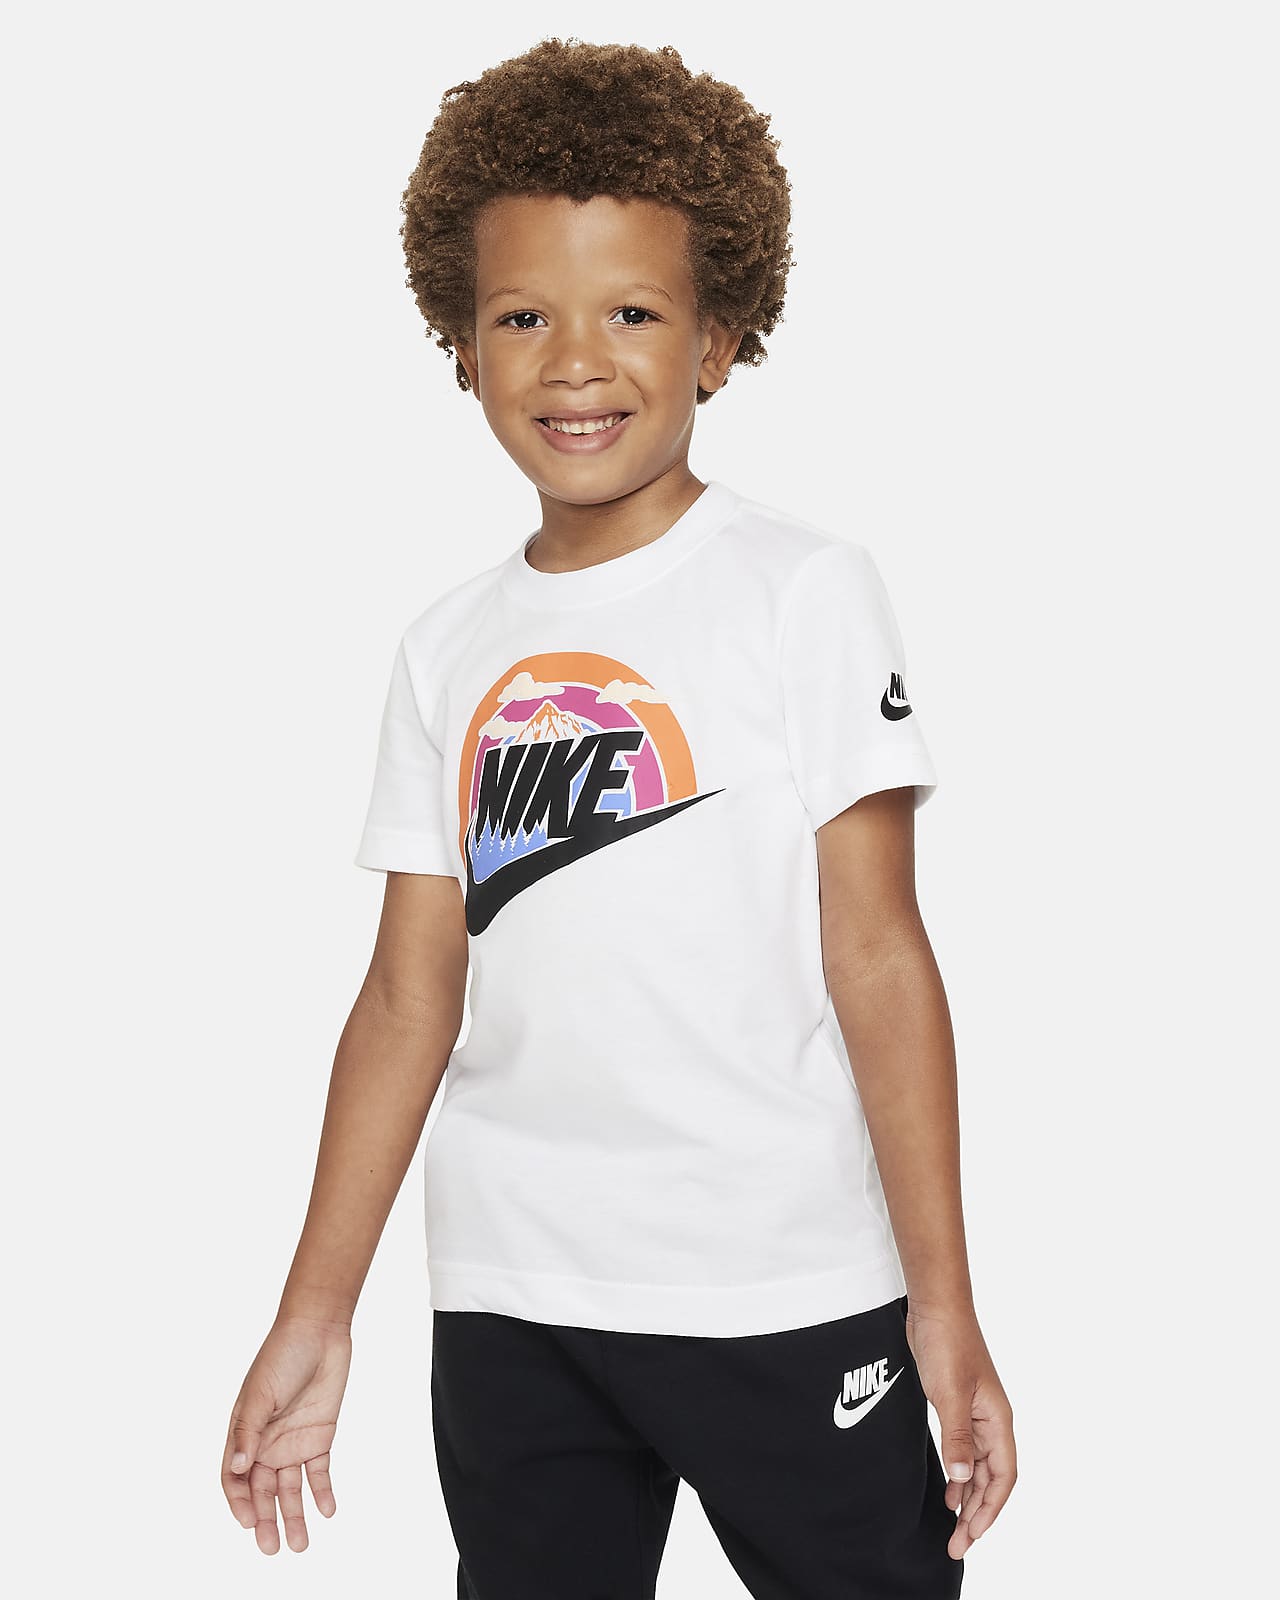 Wilderness Futura Nike T-Shirt. Kids Little Tee